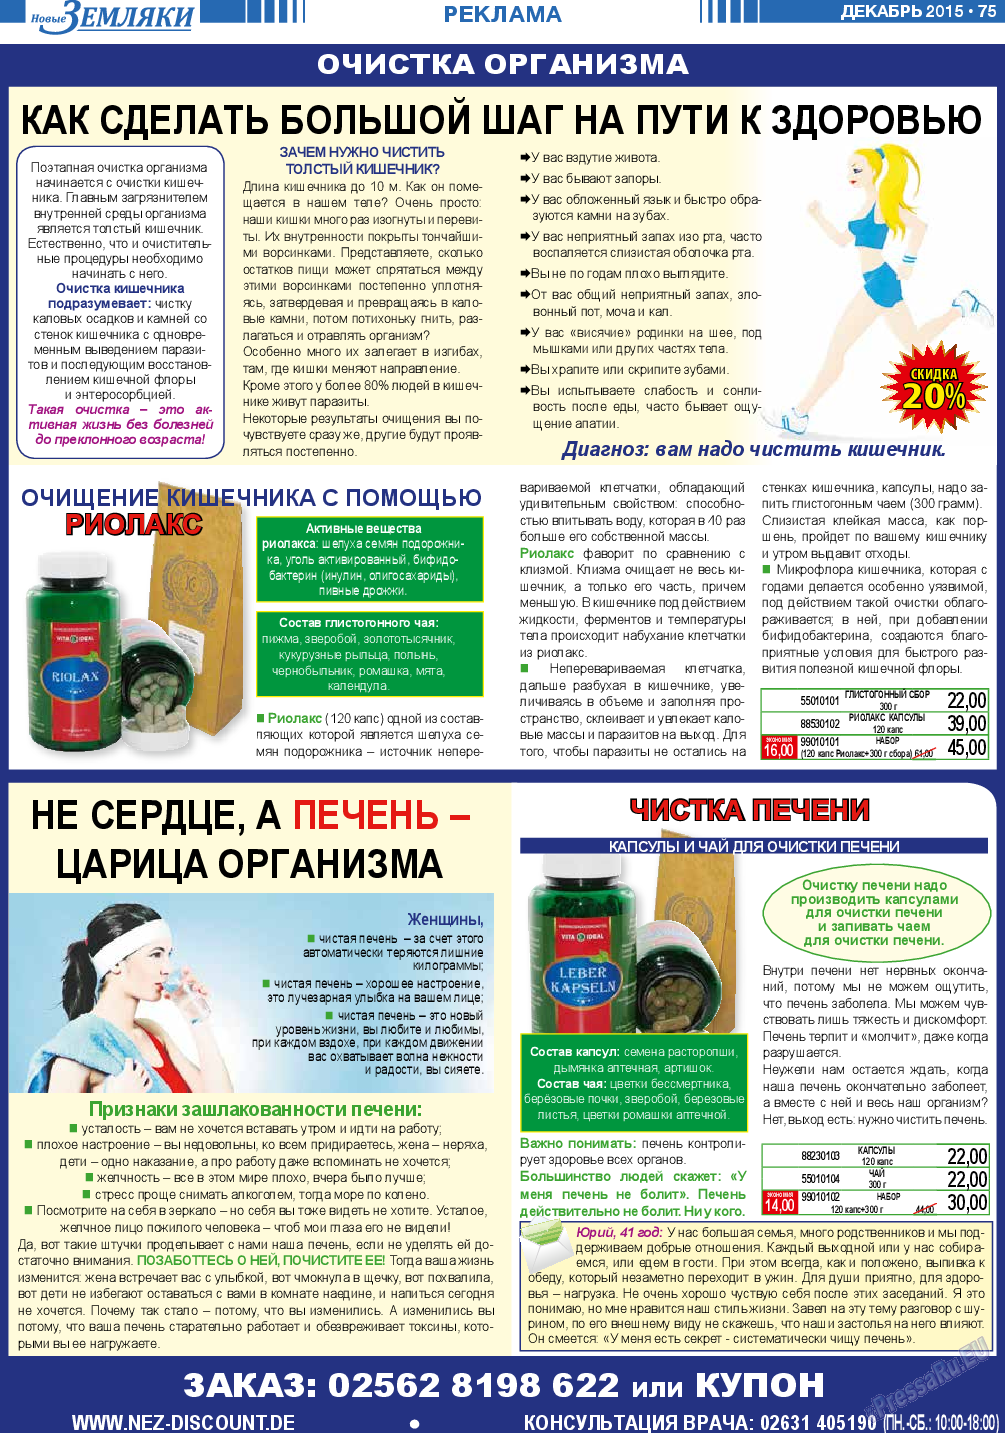 Новые Земляки, газета. 2015 №12 стр.75